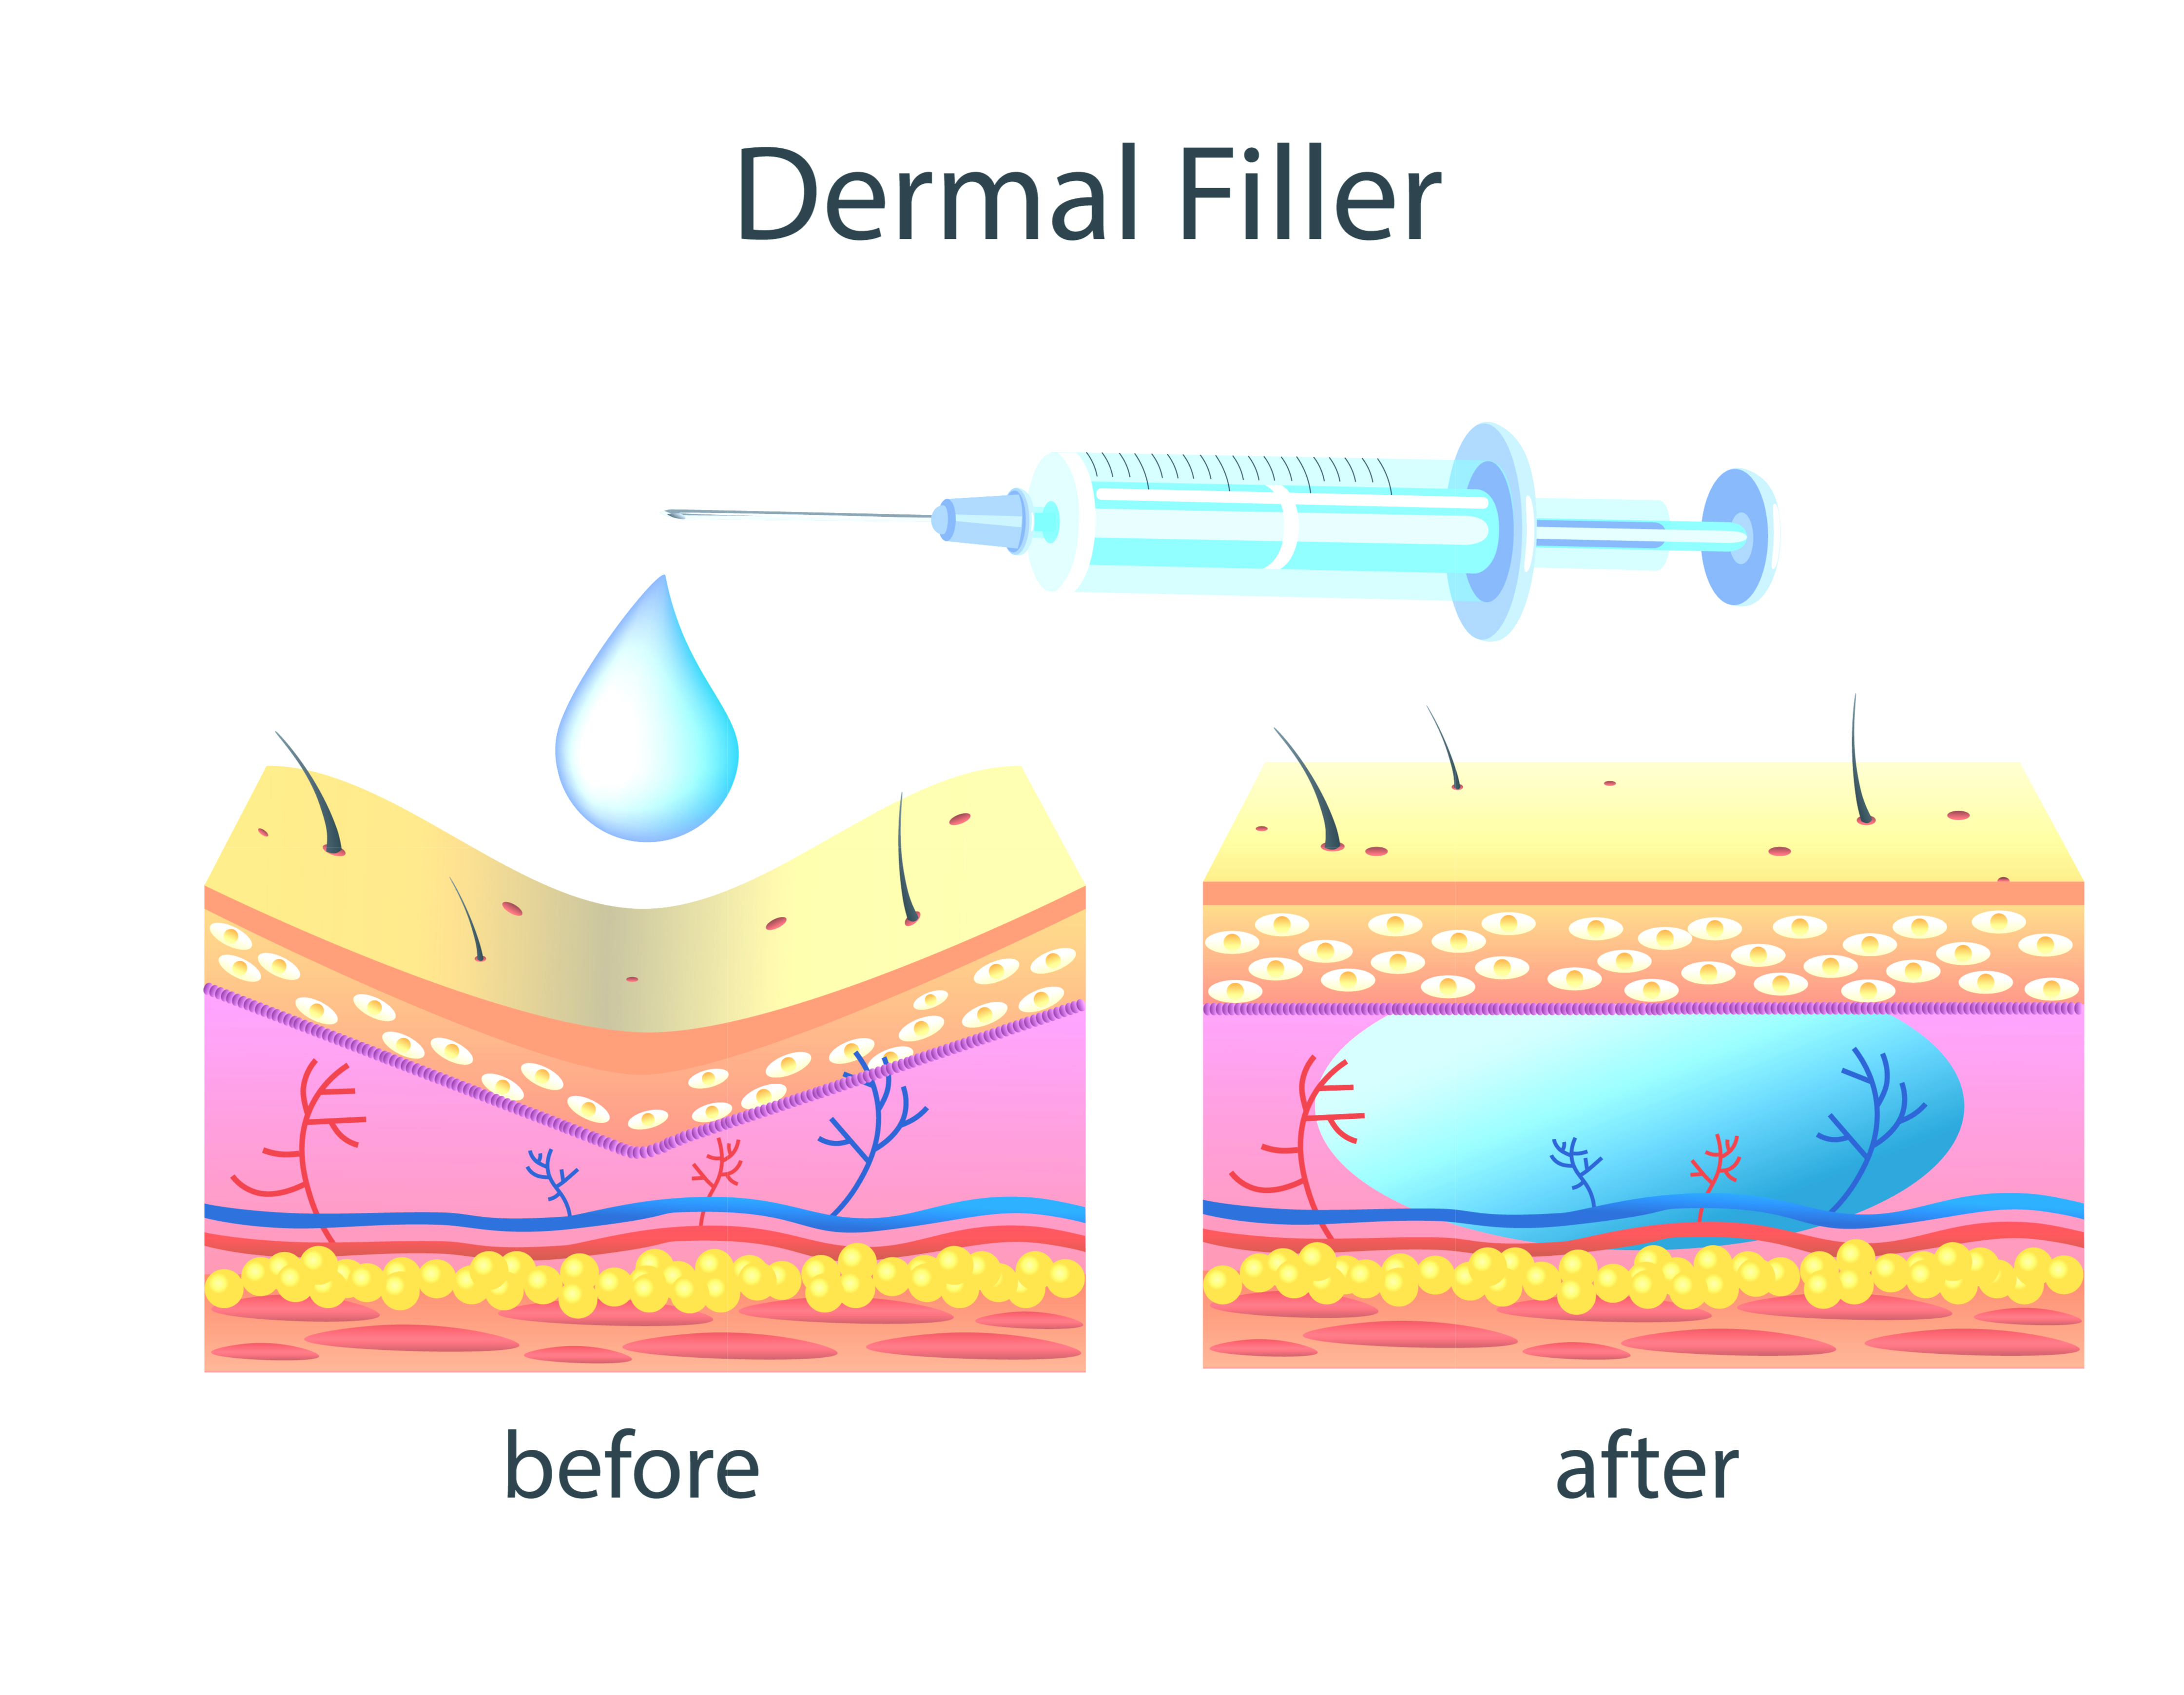 How Dermal Fillers Work